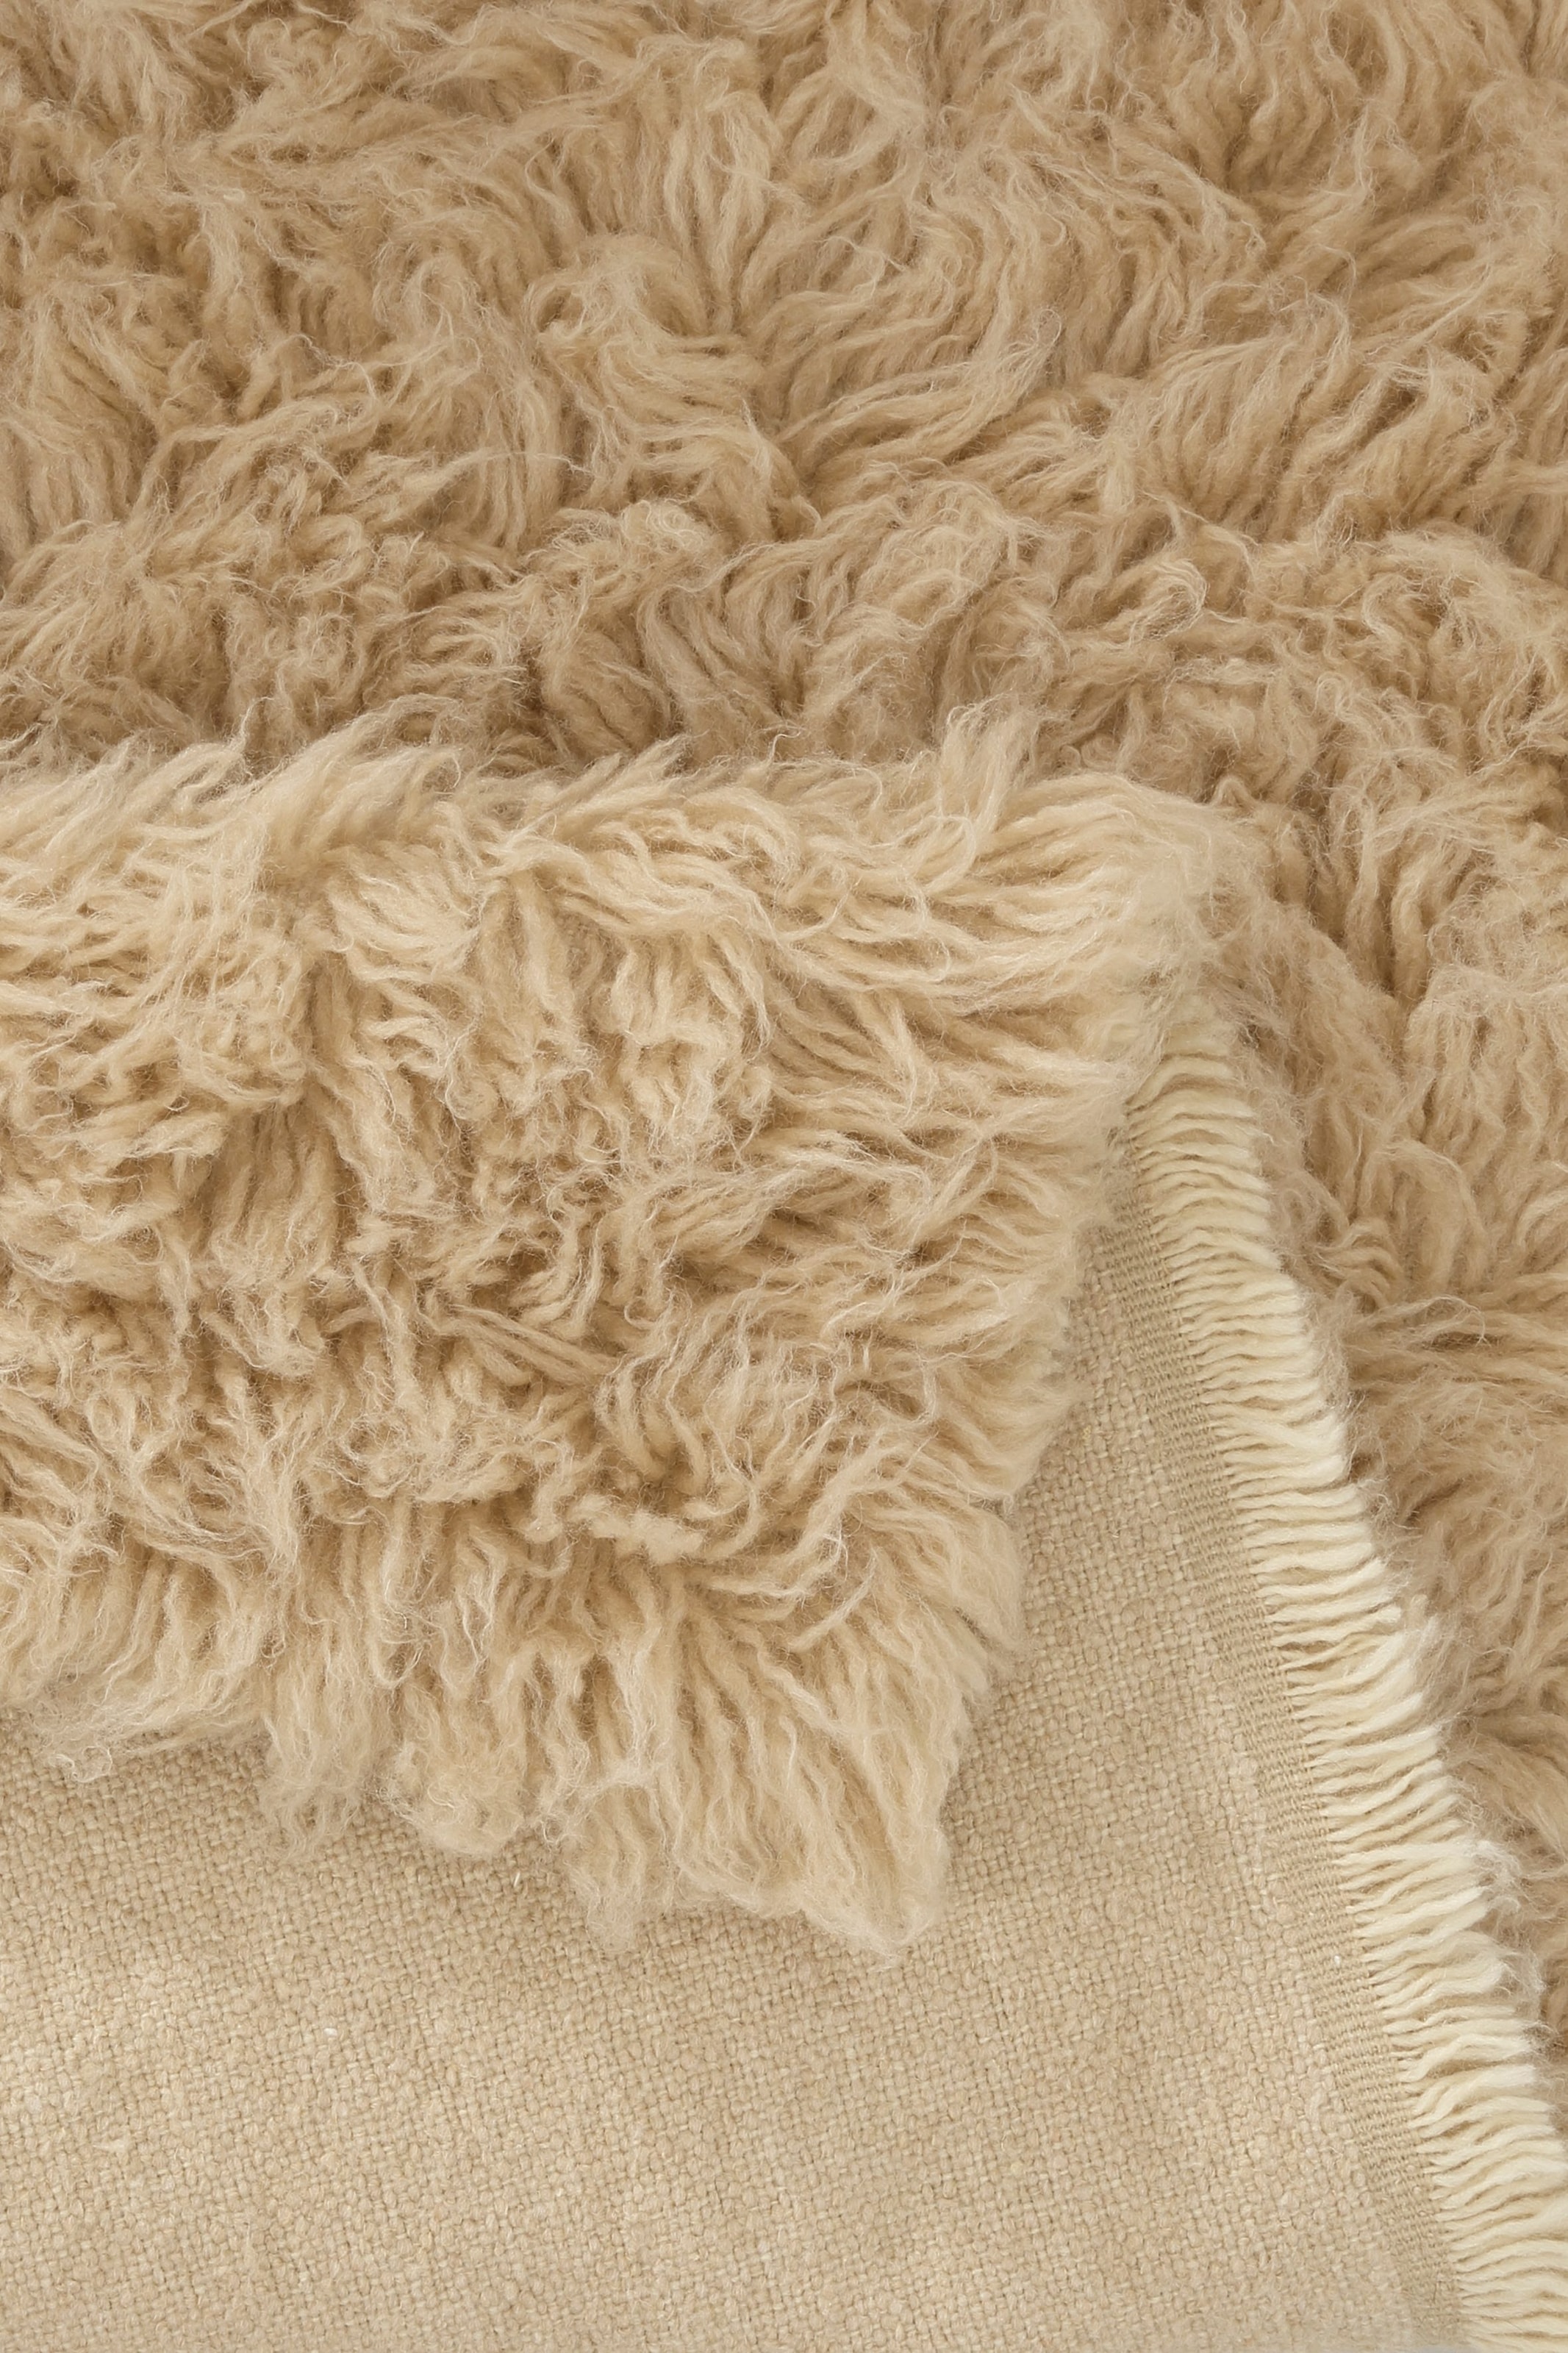 Böing Carpet Wollteppich Handweb Teppich, BAUR »Flokati reine Wolle, Farben, handgewebt | 1500 Uni- rechteckig, g«